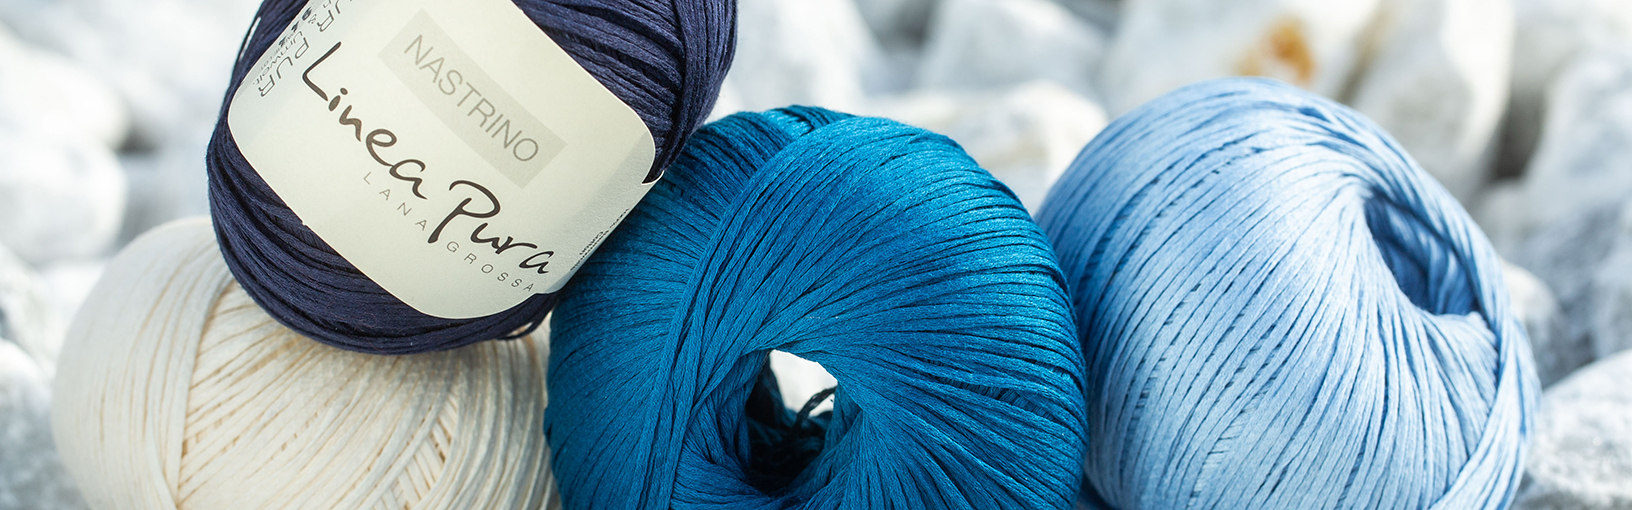 Hilos de alta calidad para tejer, crochet y fieltro Hilos Lana Grossa | Hilos calzetin